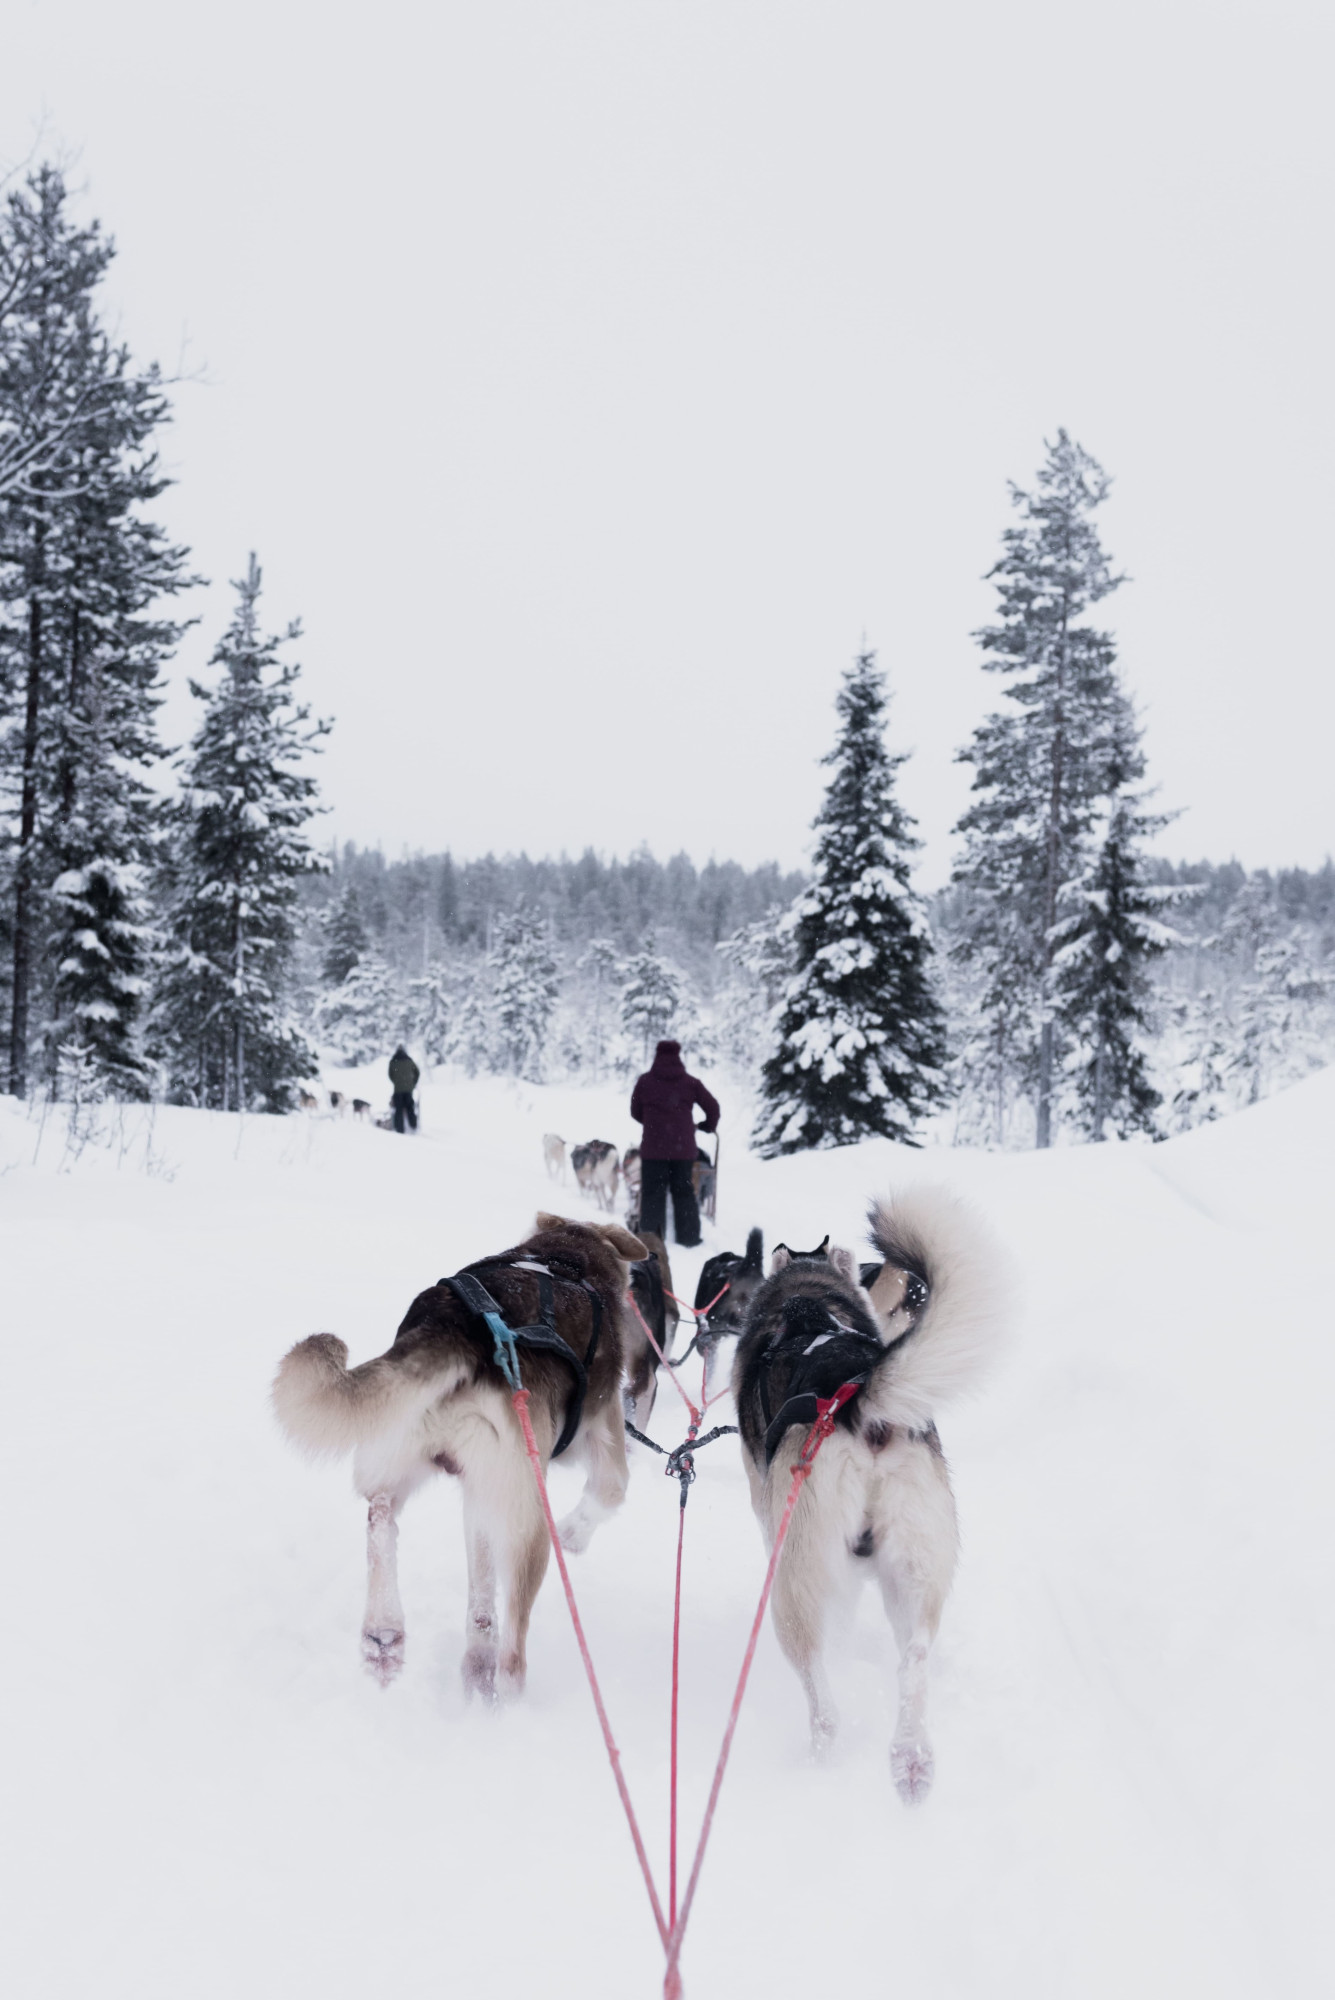 Lapland sneeuw husky's hondensleetocht